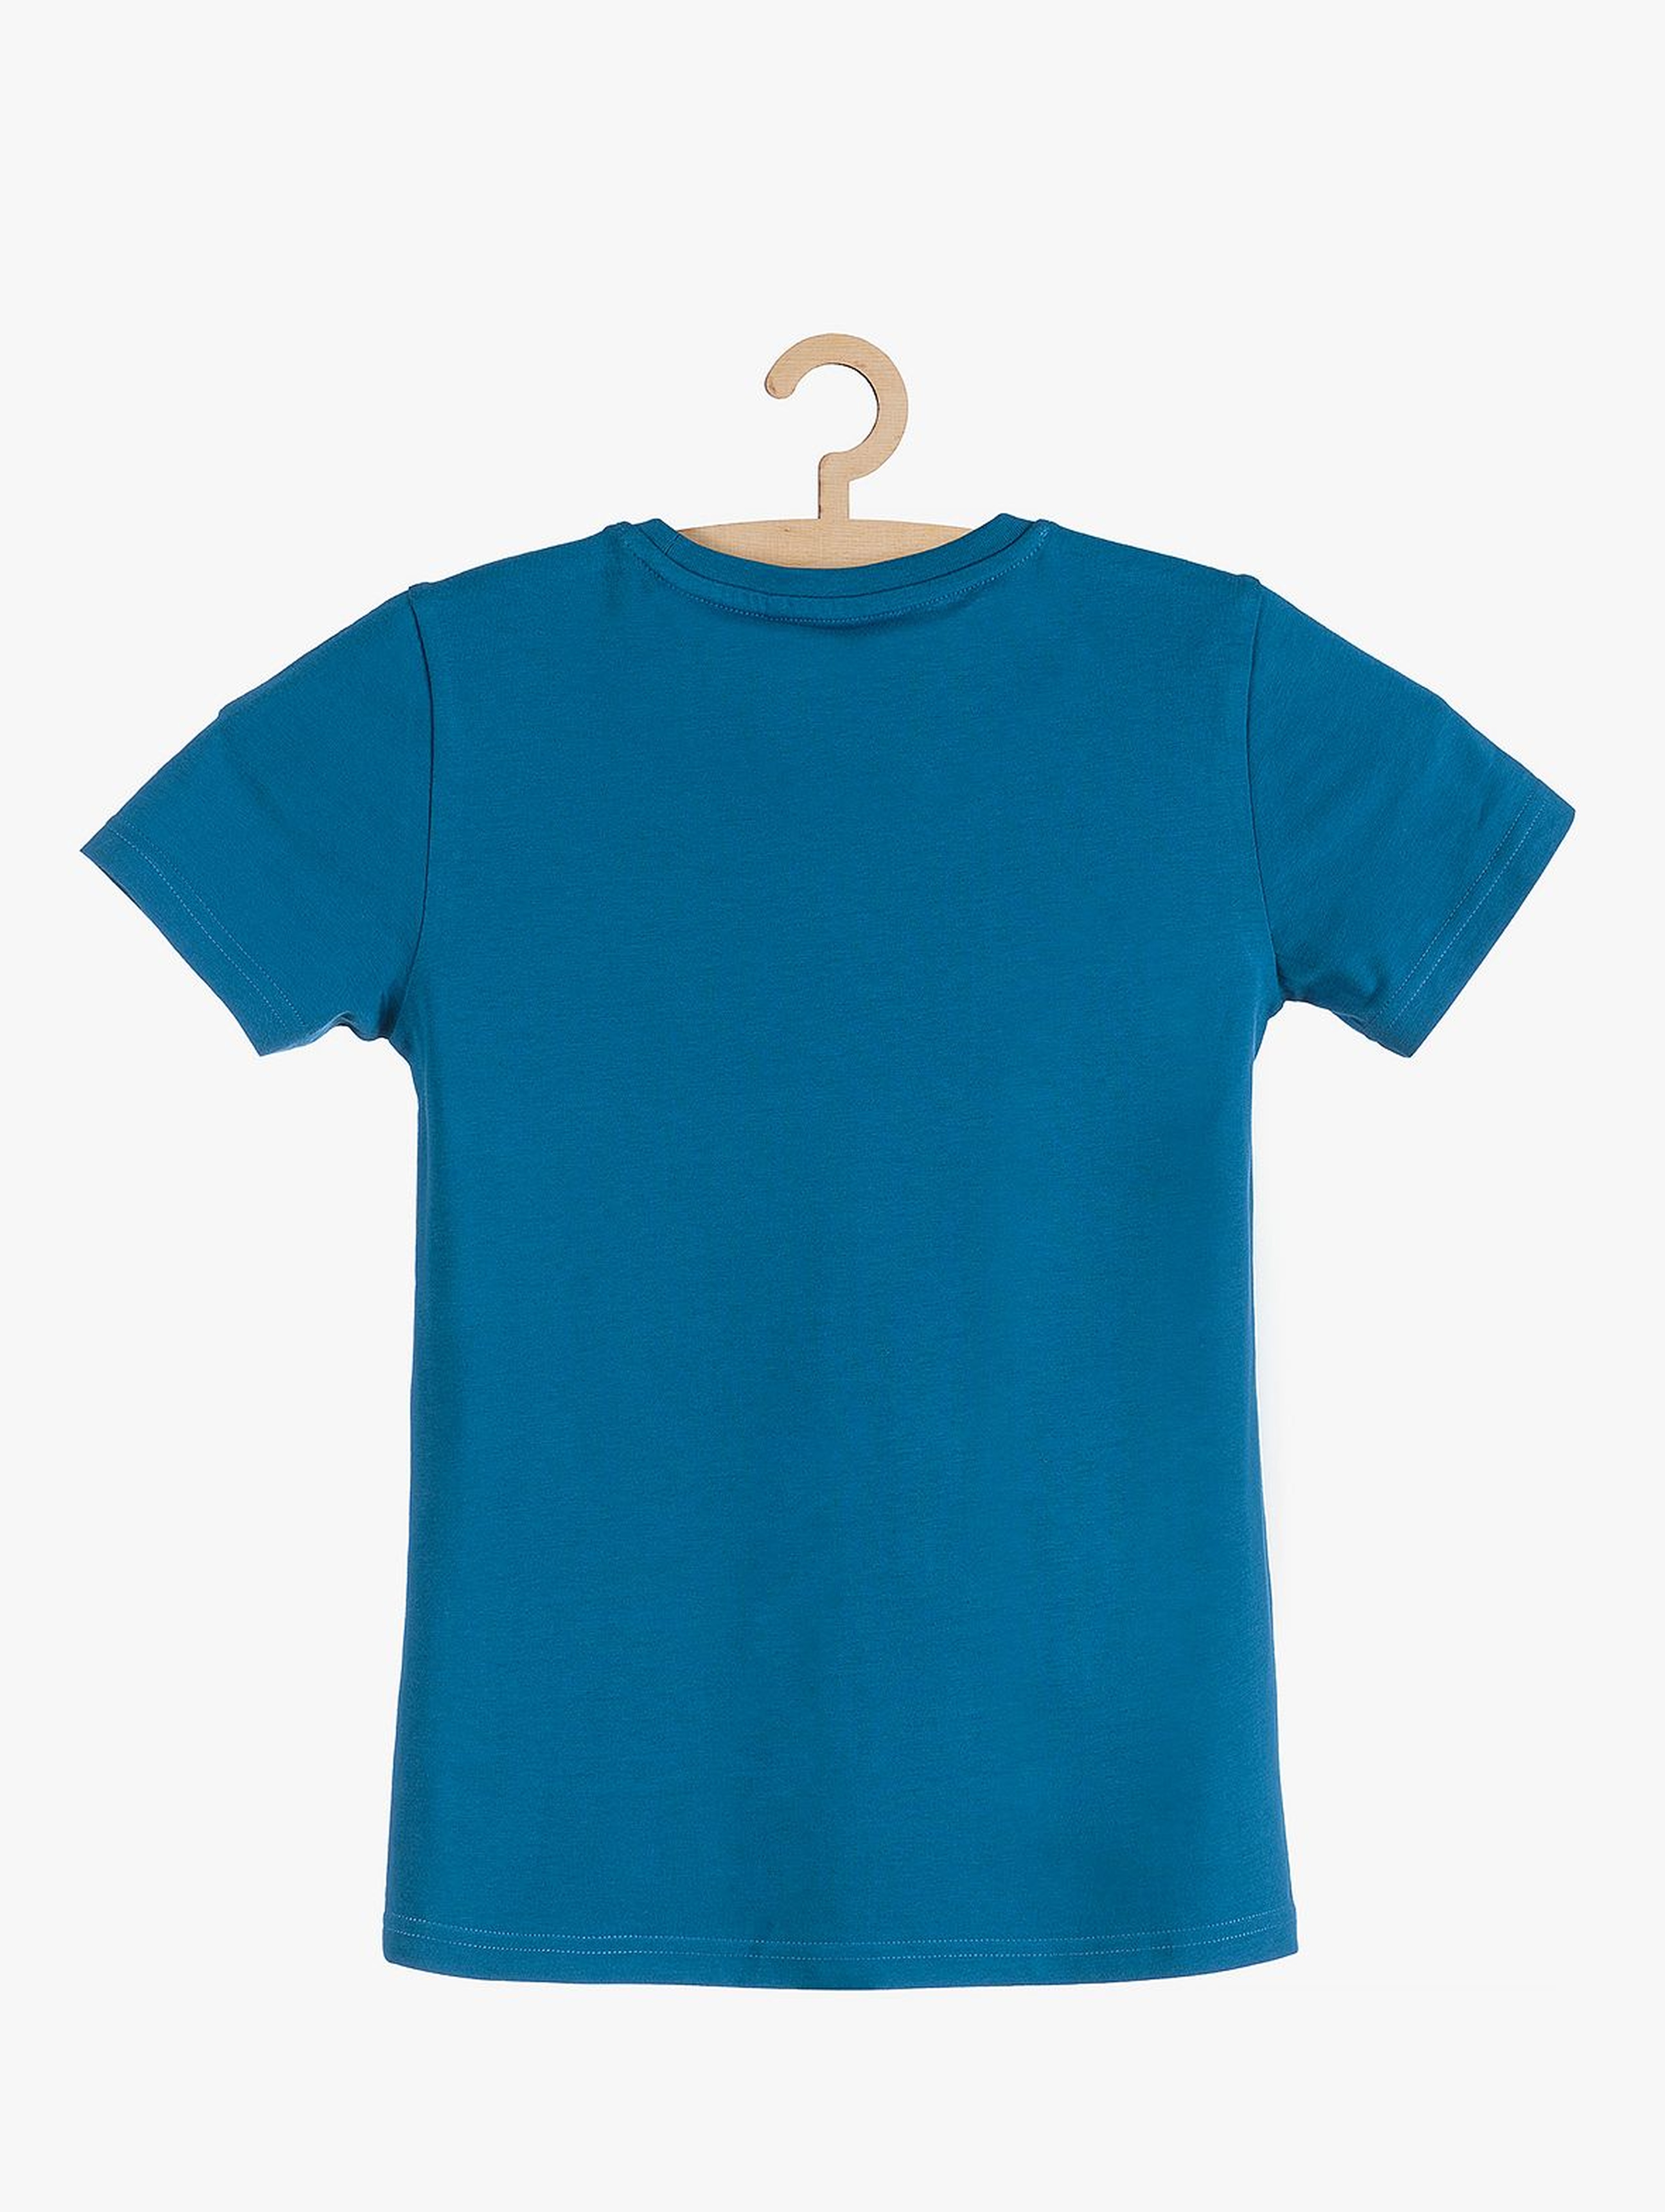 T-shirt chłopięcy niebieski z napisami